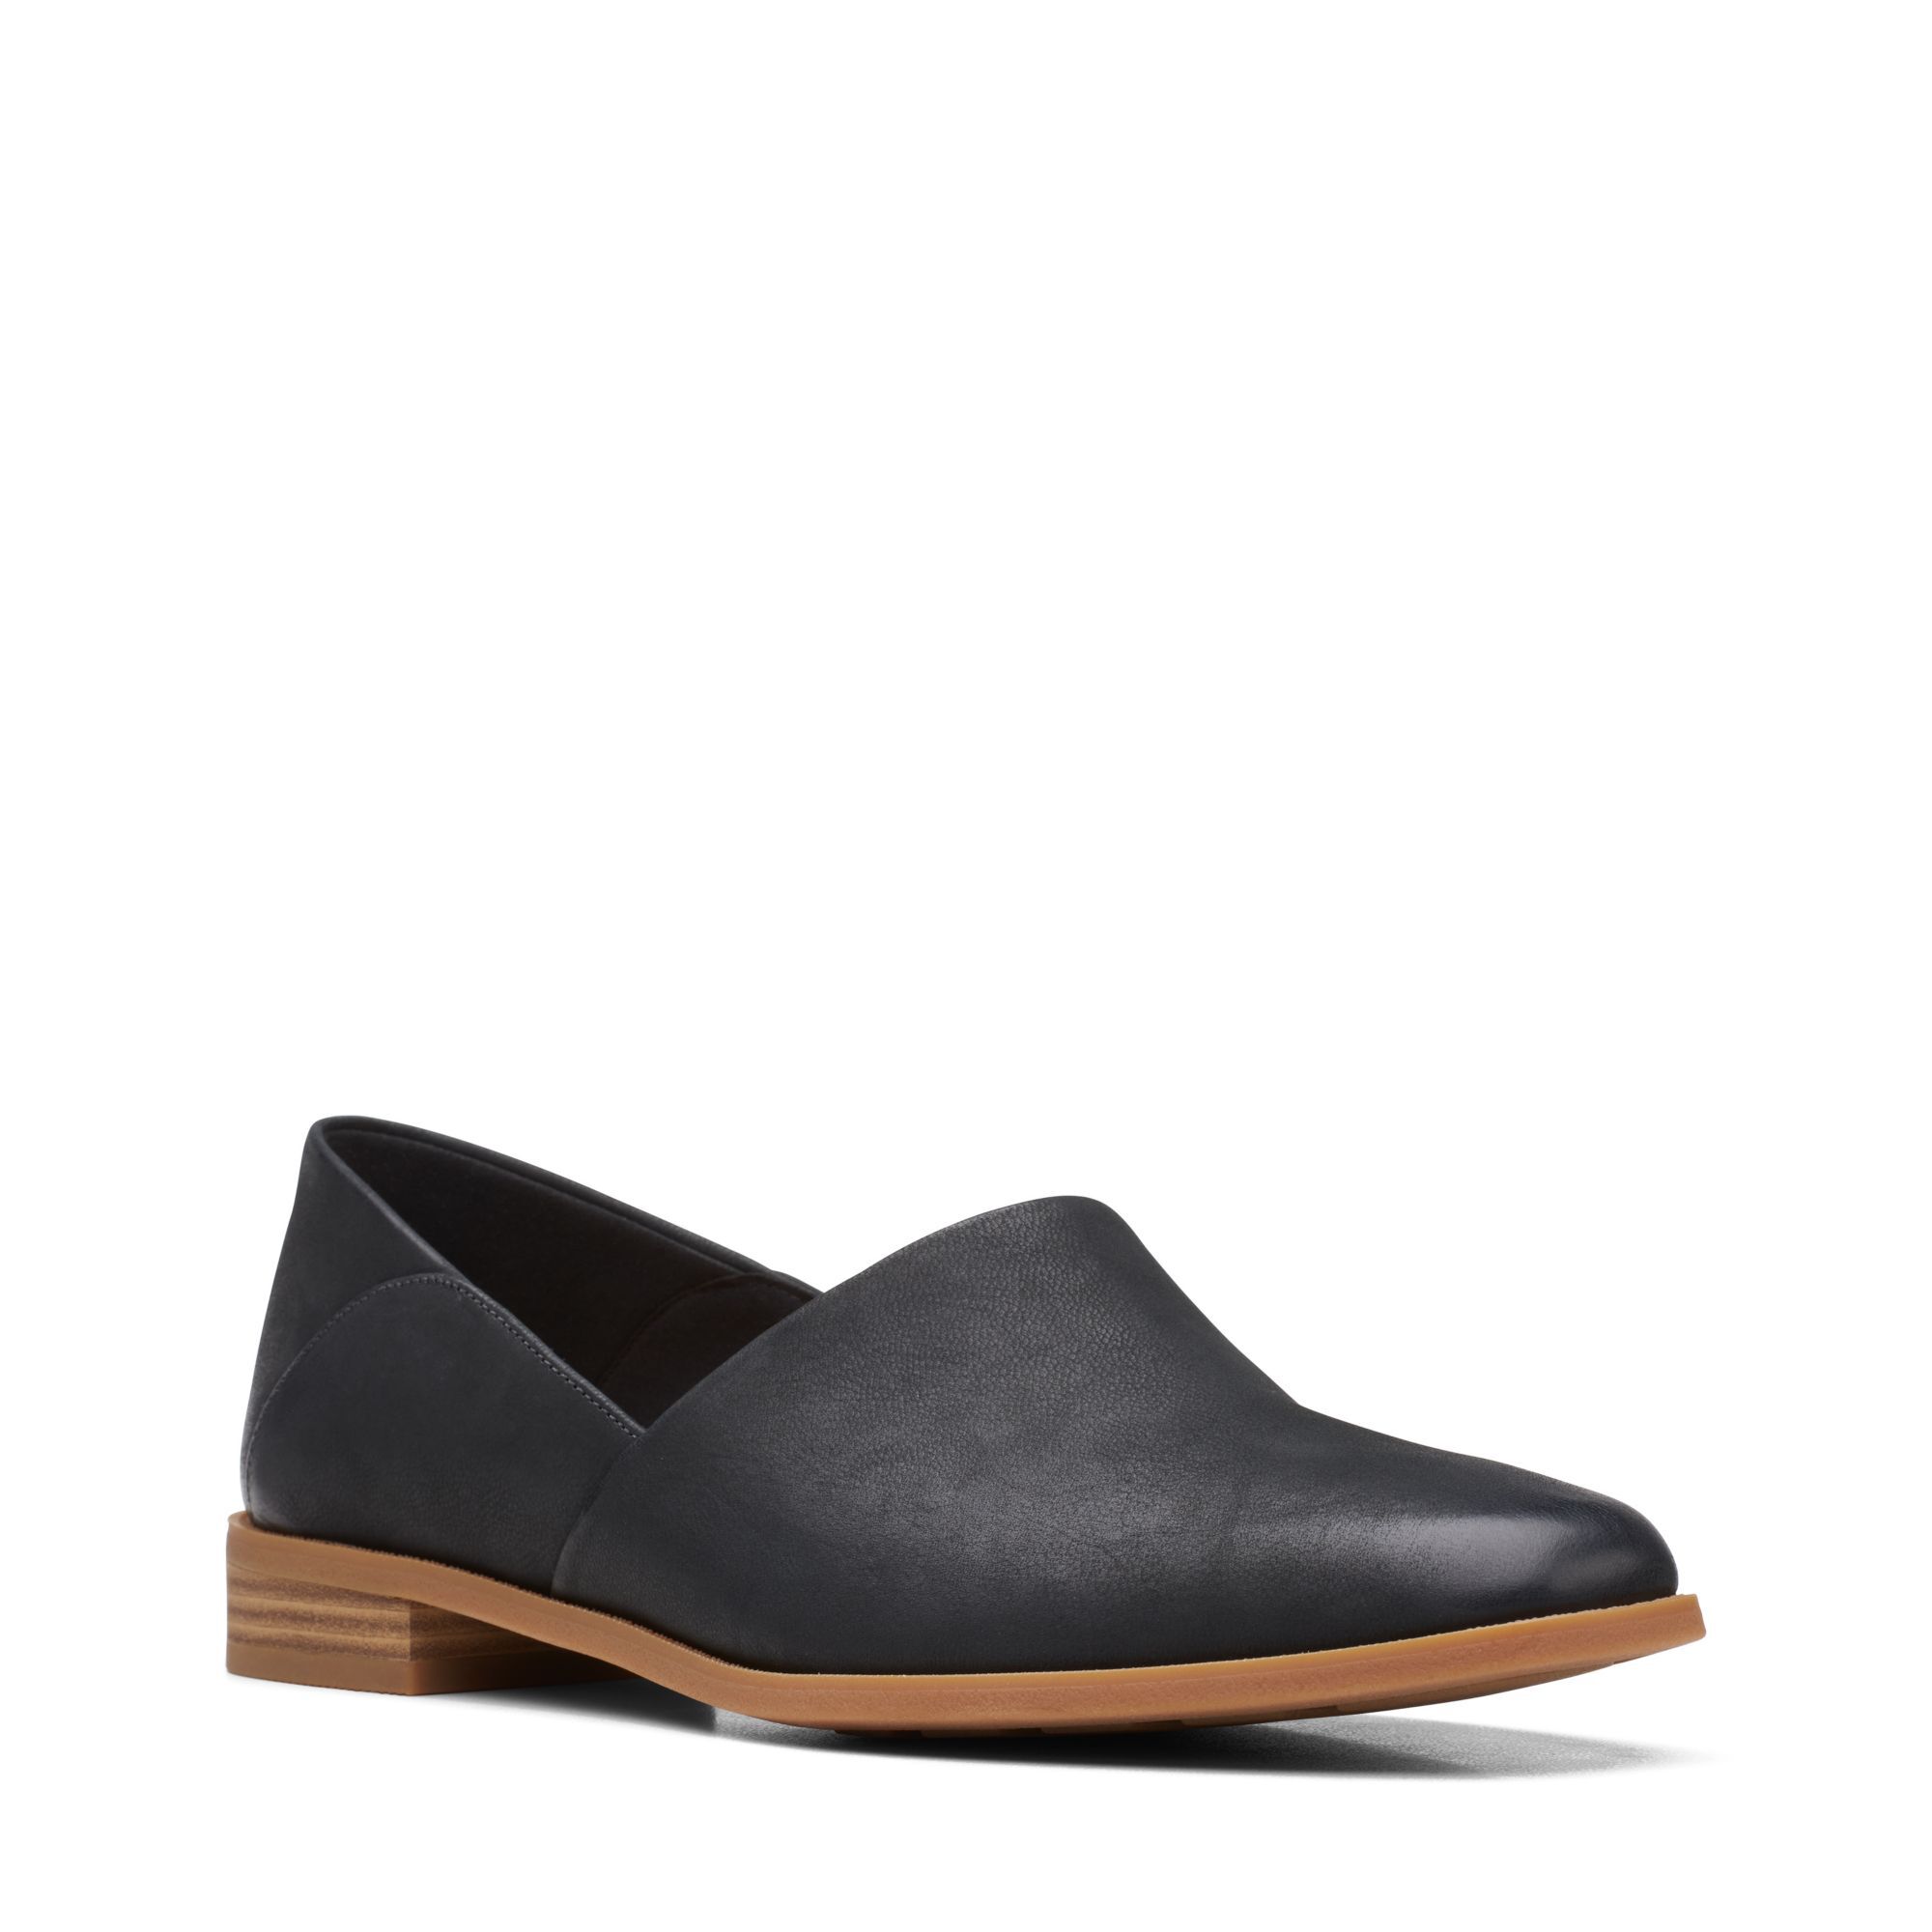 Женские туфли-лодочки Clarks, черные, цвет черный, размер 37.5